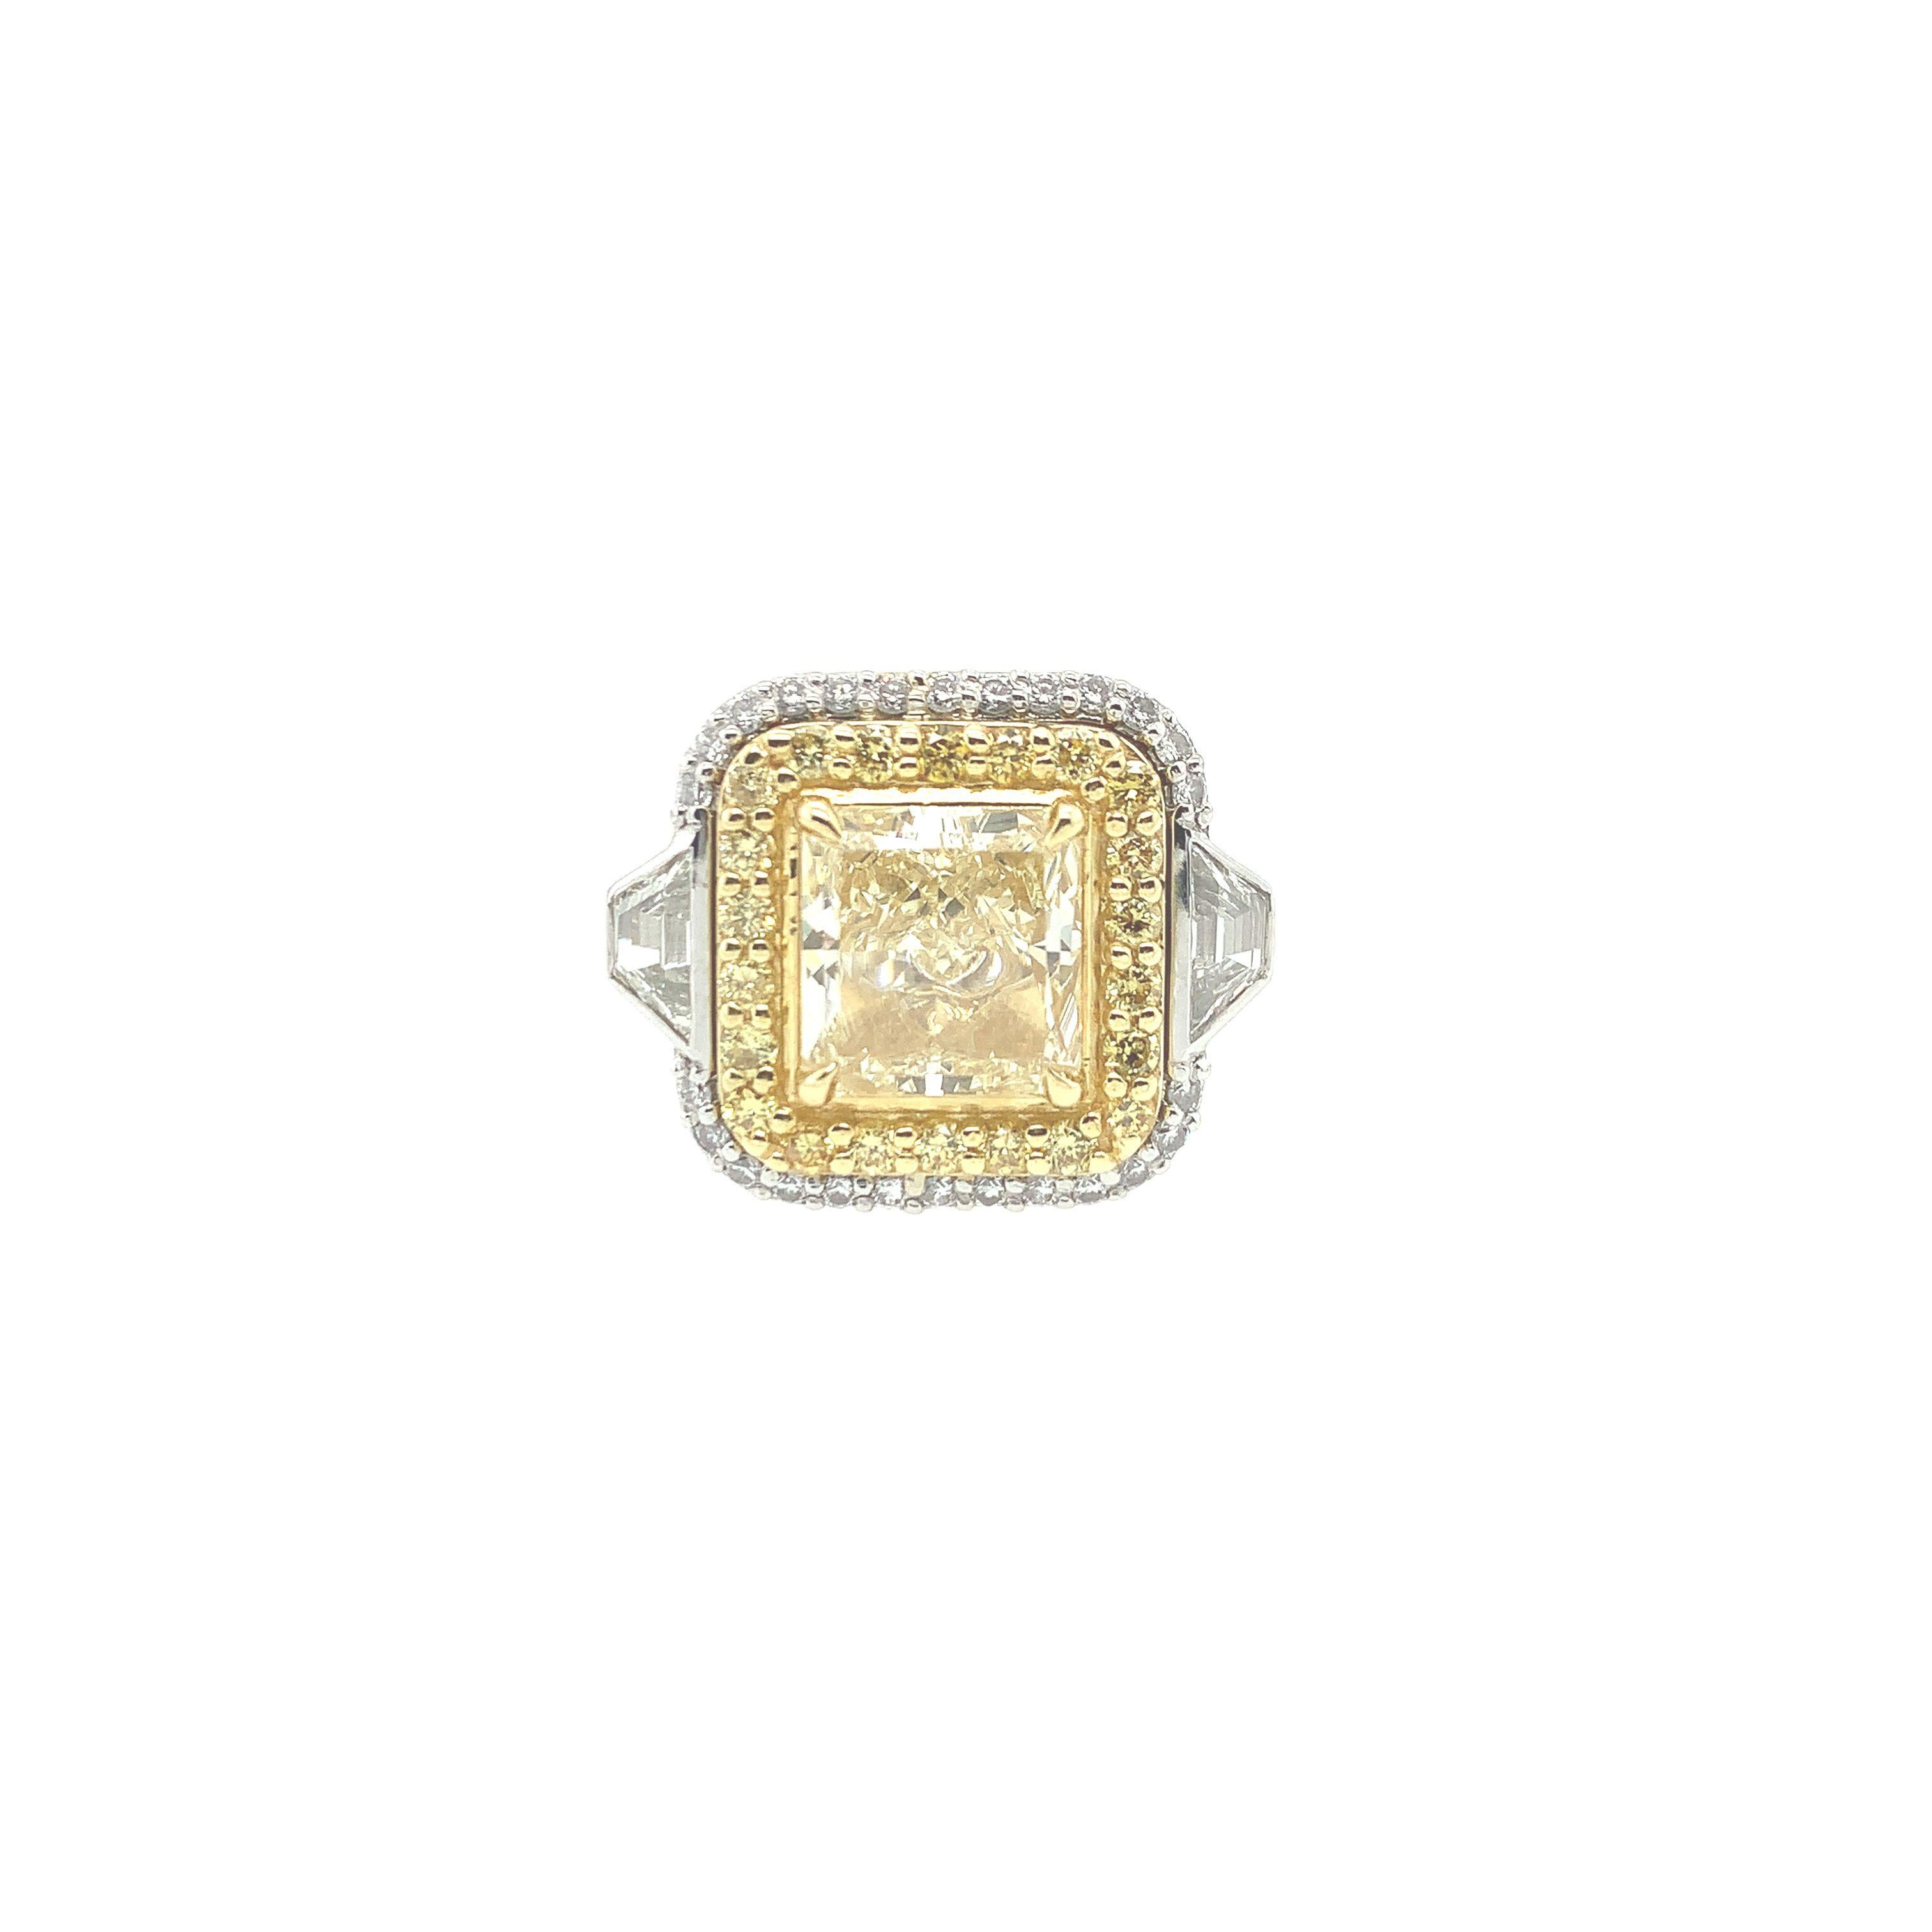 Un diamant jaune de fantaisie de 3,46 carats est le point central de cette bague exquise. En son centre, ce diamant jaune radieux de taille fantaisie mesure 8,78 x 8,53 x 5,08 mm, pureté VVS2.  Cette magnifique bague est accentuée par (2) deux